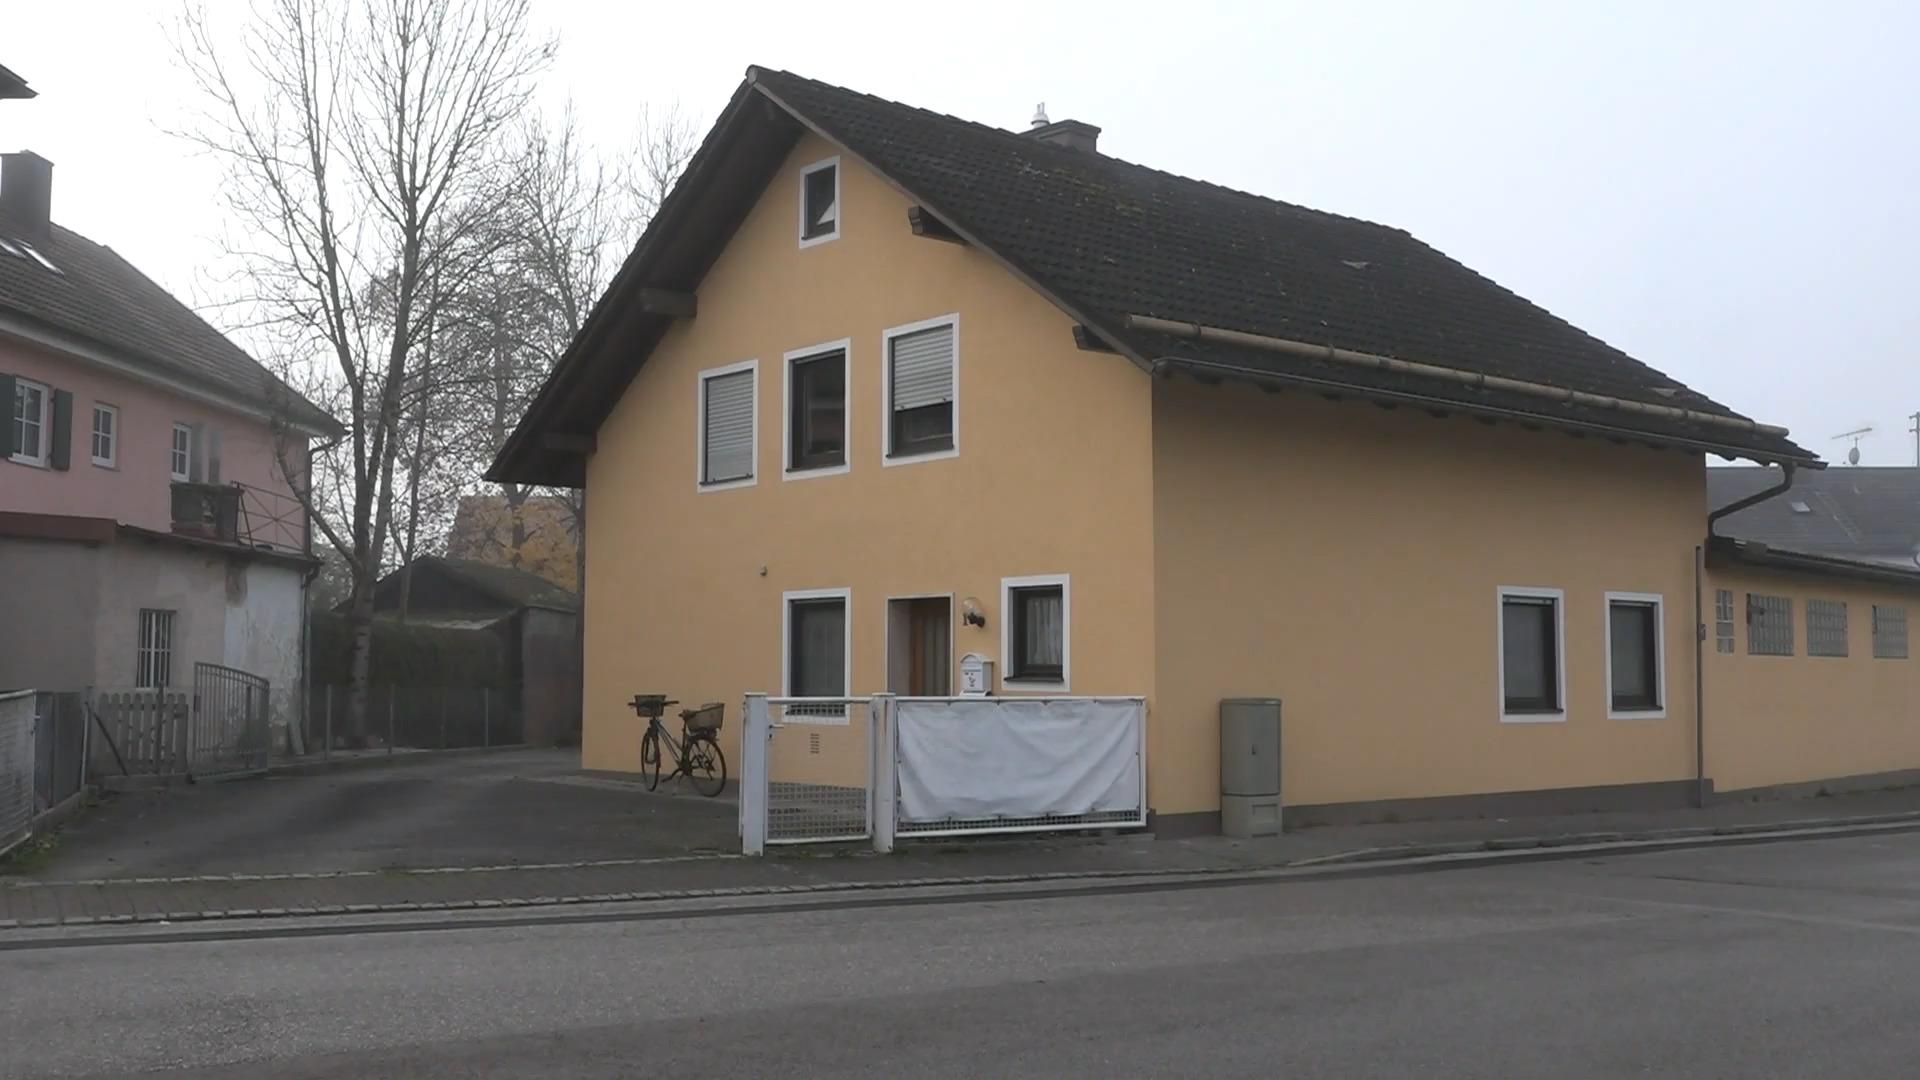 Bluttat in Weilheim: Mann (59) tötet drei Menschen und sich Opfer und Täter waren verwandt